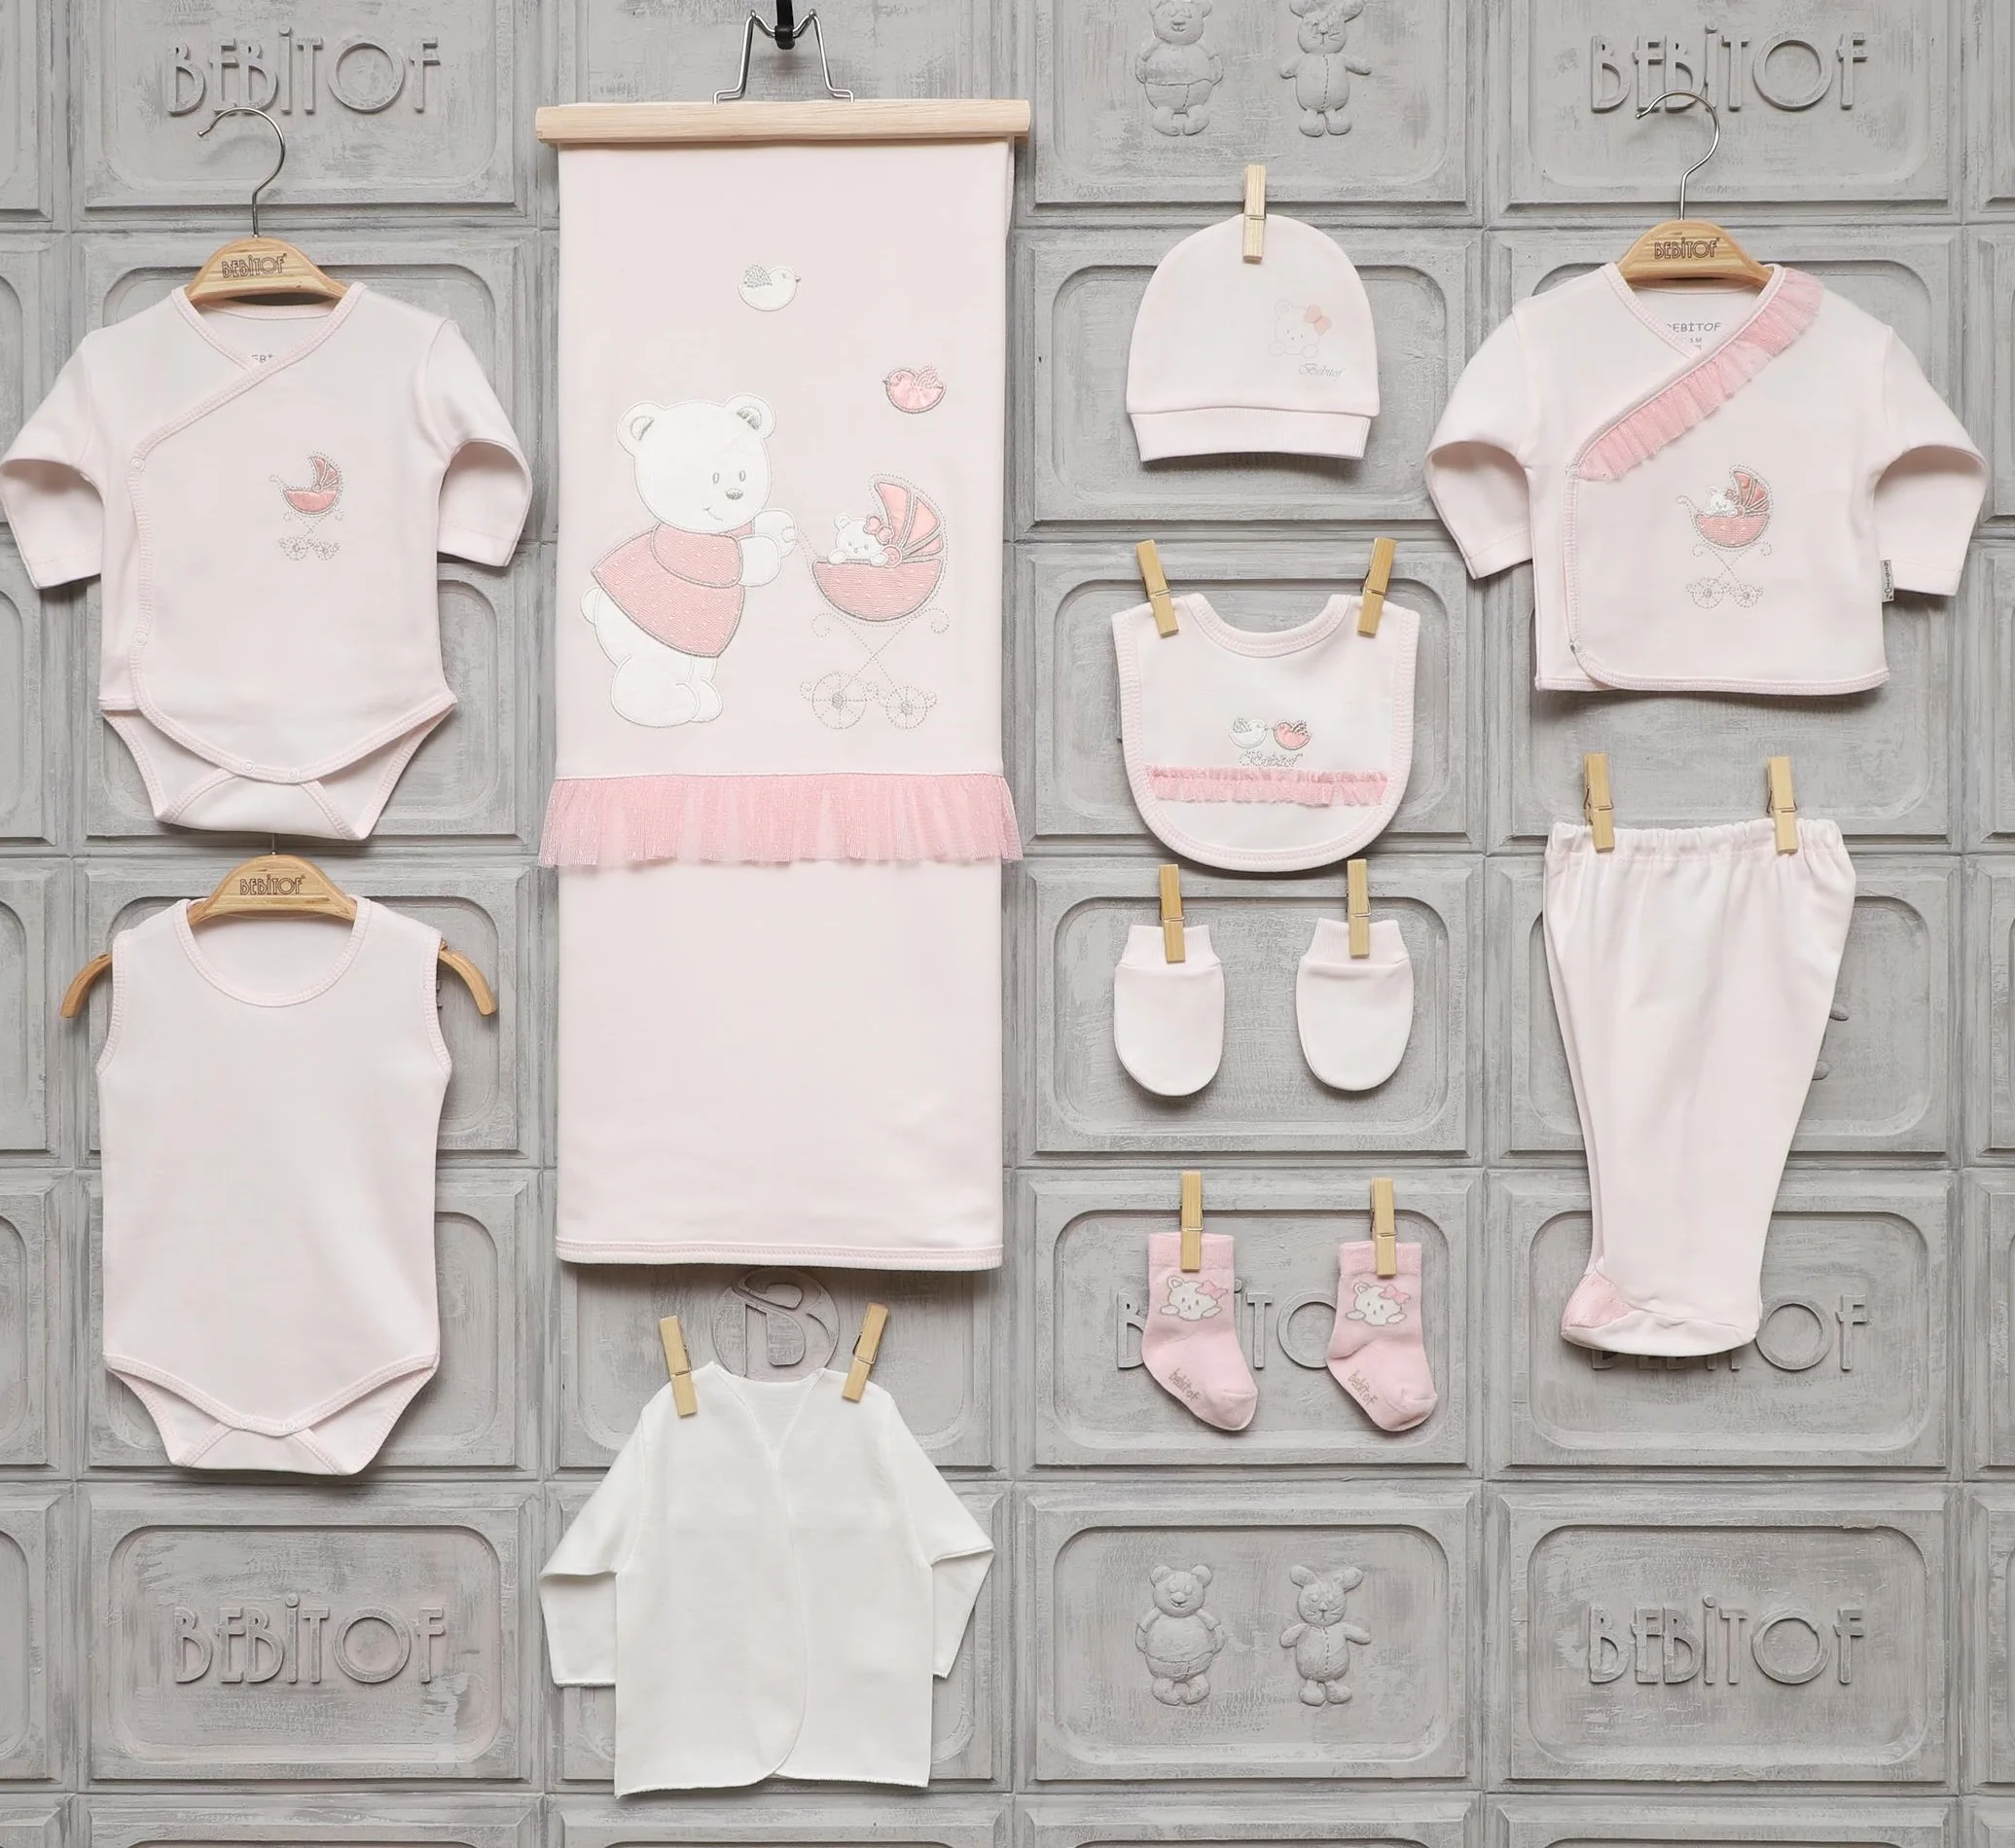 Bebitof Одежда для новорожденных девочек хлопковая базовая одежда первой необходимости 10 штук Layette Wellcome подарочный набор для дома 0 3 месяцев от AliExpress RU&CIS NEW